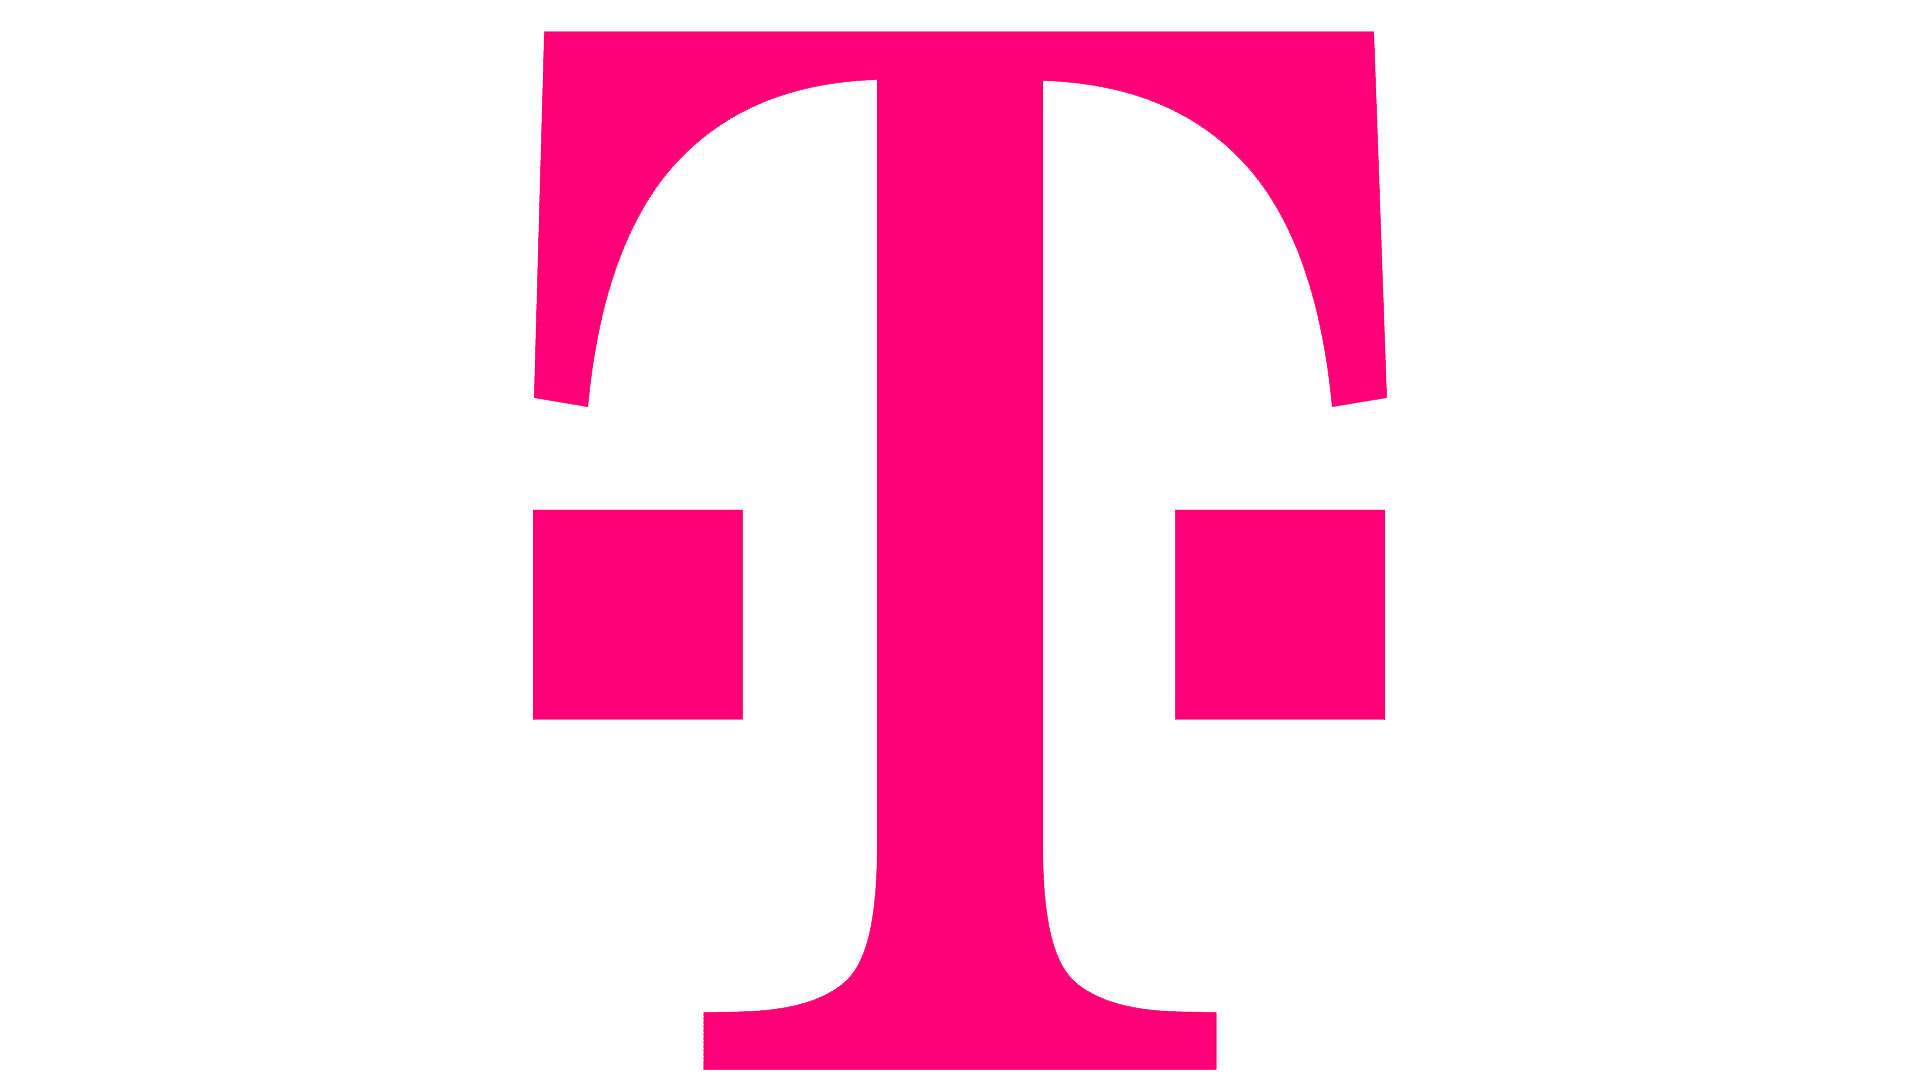 Das Logo der Telekom